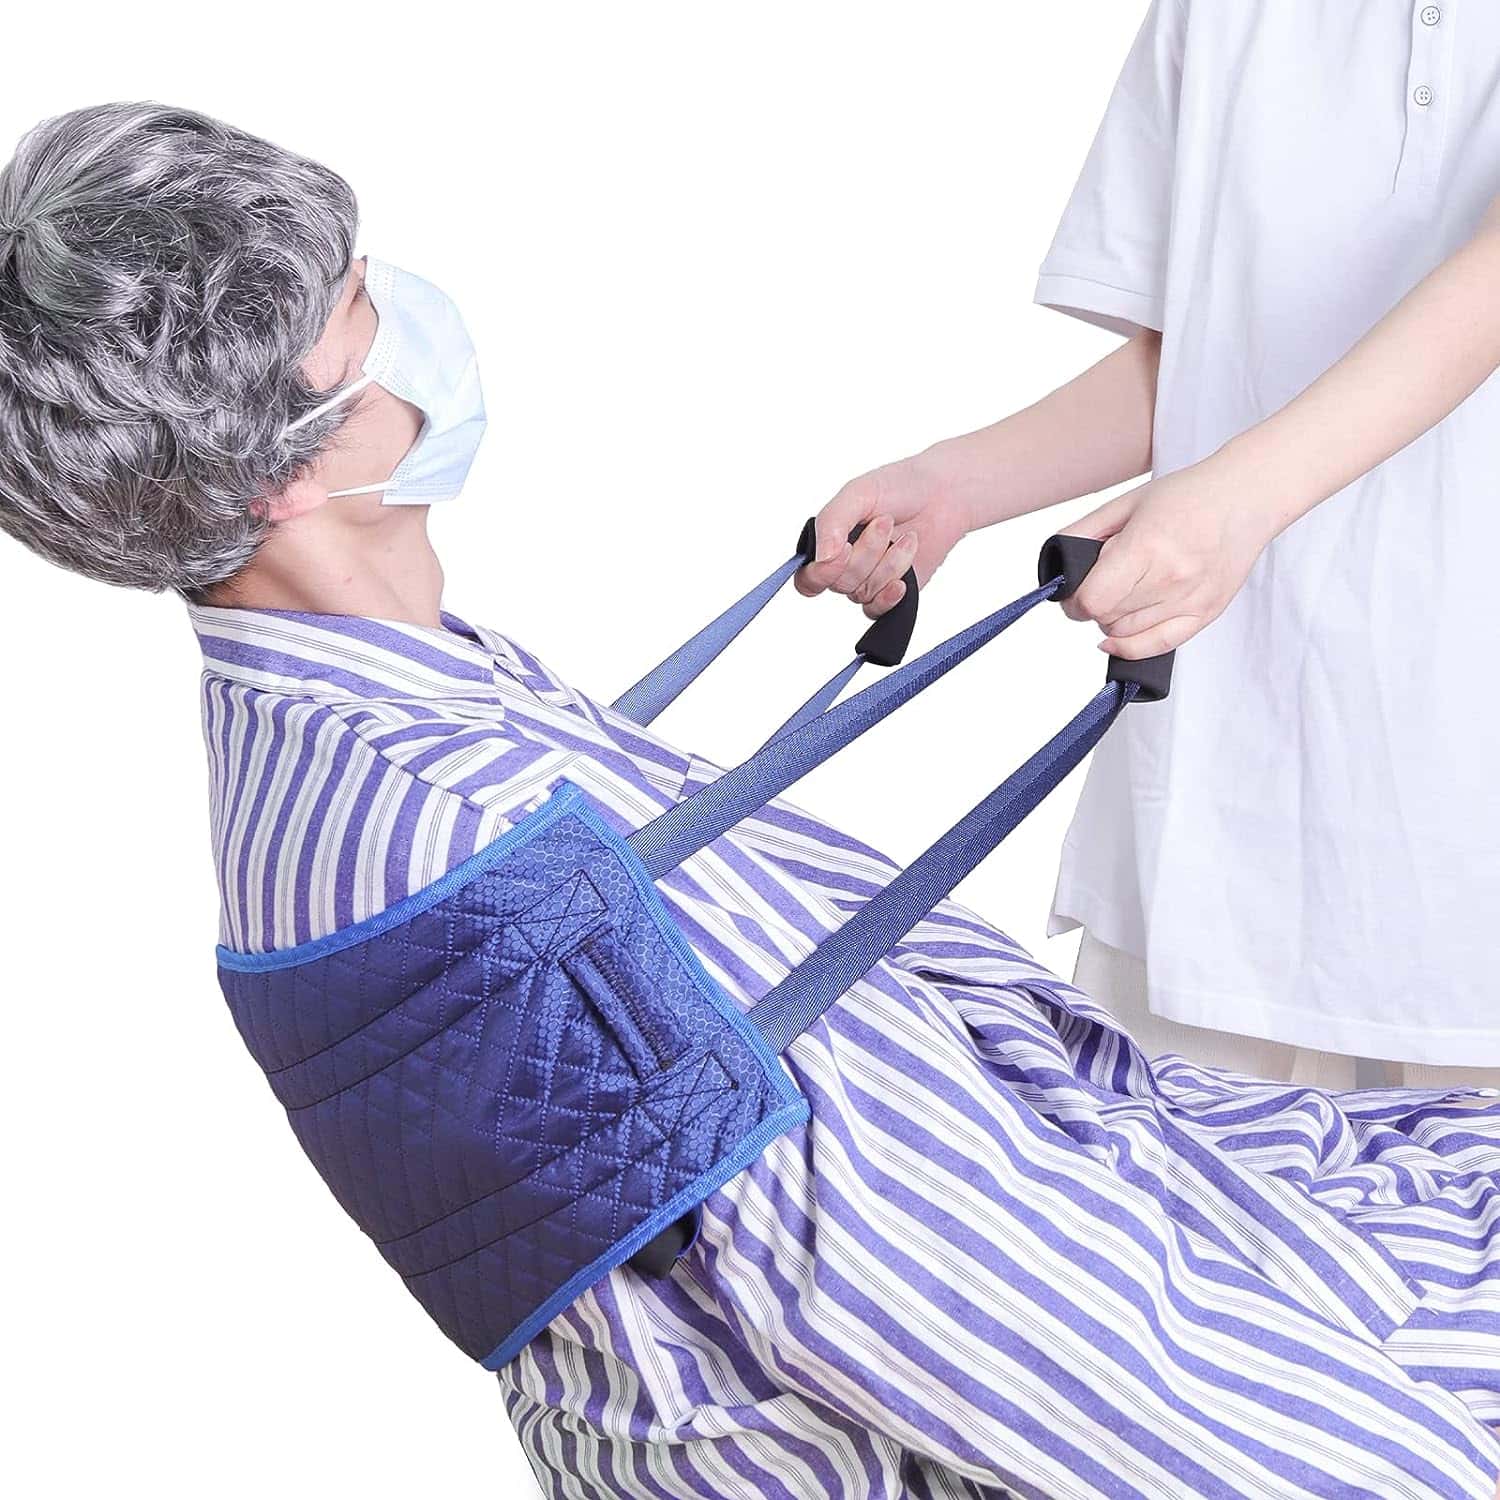 移乗ベルト 介護用 ベルト 看護師監修 腰痛軽減 多機能移乗ベルト 肩ベルト付き 介護用品 立ち上がり補助 介助ベルト・補助シートベルト | 移乗 起身 足の持ち上げ 膝の曲げ 寝返り | 介護者の負担を軽減 ベッド車椅子介護ベルト